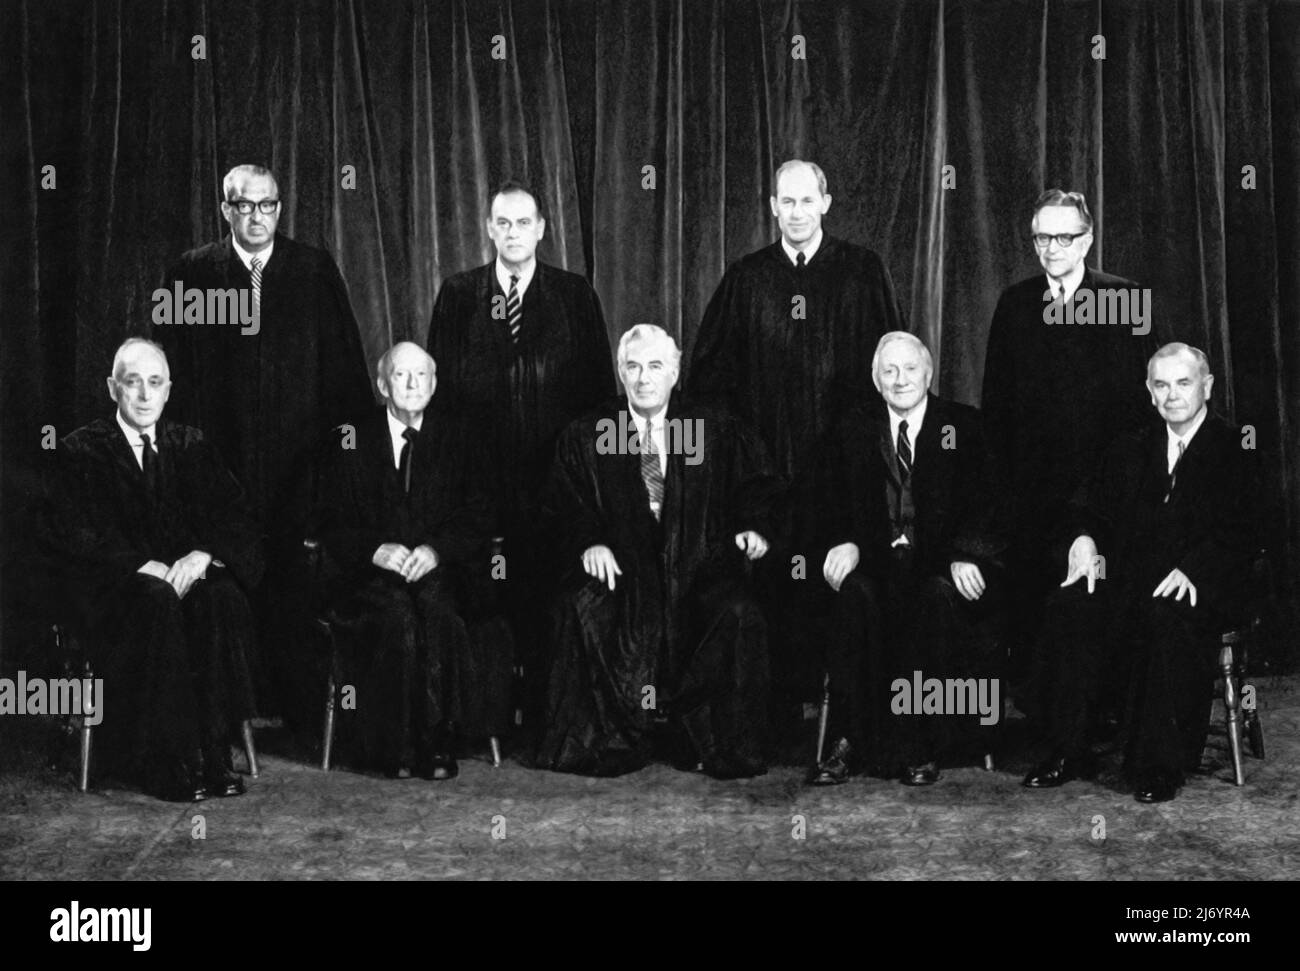 Portrait de groupe officiel de la Cour suprême des États-Unis le 23 janvier 1971. Ce tribunal entendrait plus tard l'argument initial dans l'affaire Roe c. Wade avortement, le 13 décembre 1971. L'affaire a été rédébattue le 11 octobre 1972, les juges Black et Harlan à la retraite étant remplacés par les juges Powell et Rehnquist. Rrow vs Wade a été décidé le 22 janvier 1973. Banque D'Images